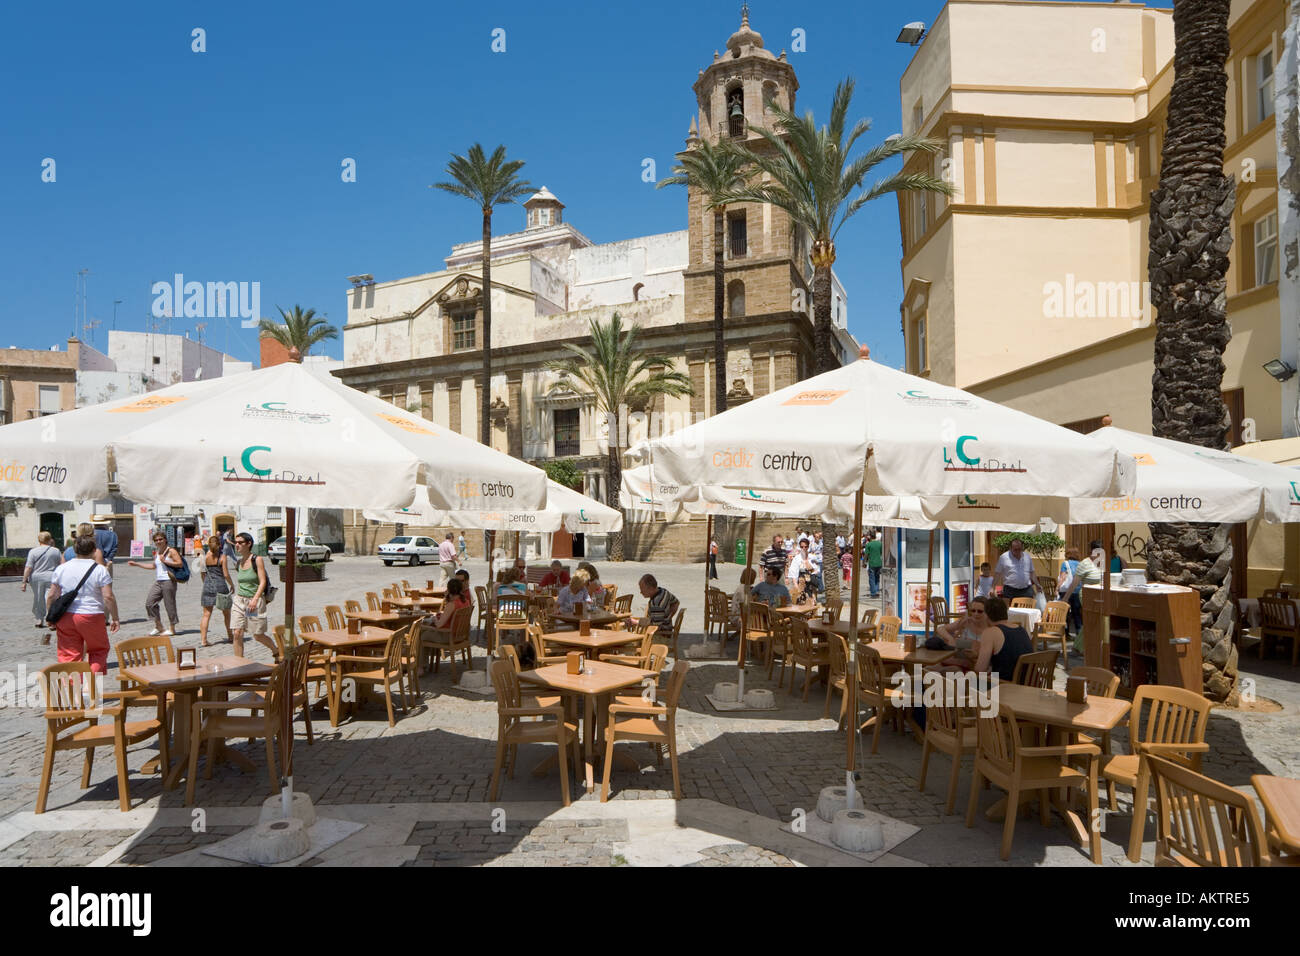 Cafe de la chaussée près de la cathédrale, la Plaza de la Catedral, Vieille Ville, Cadix, Andalousie, Espagne Banque D'Images